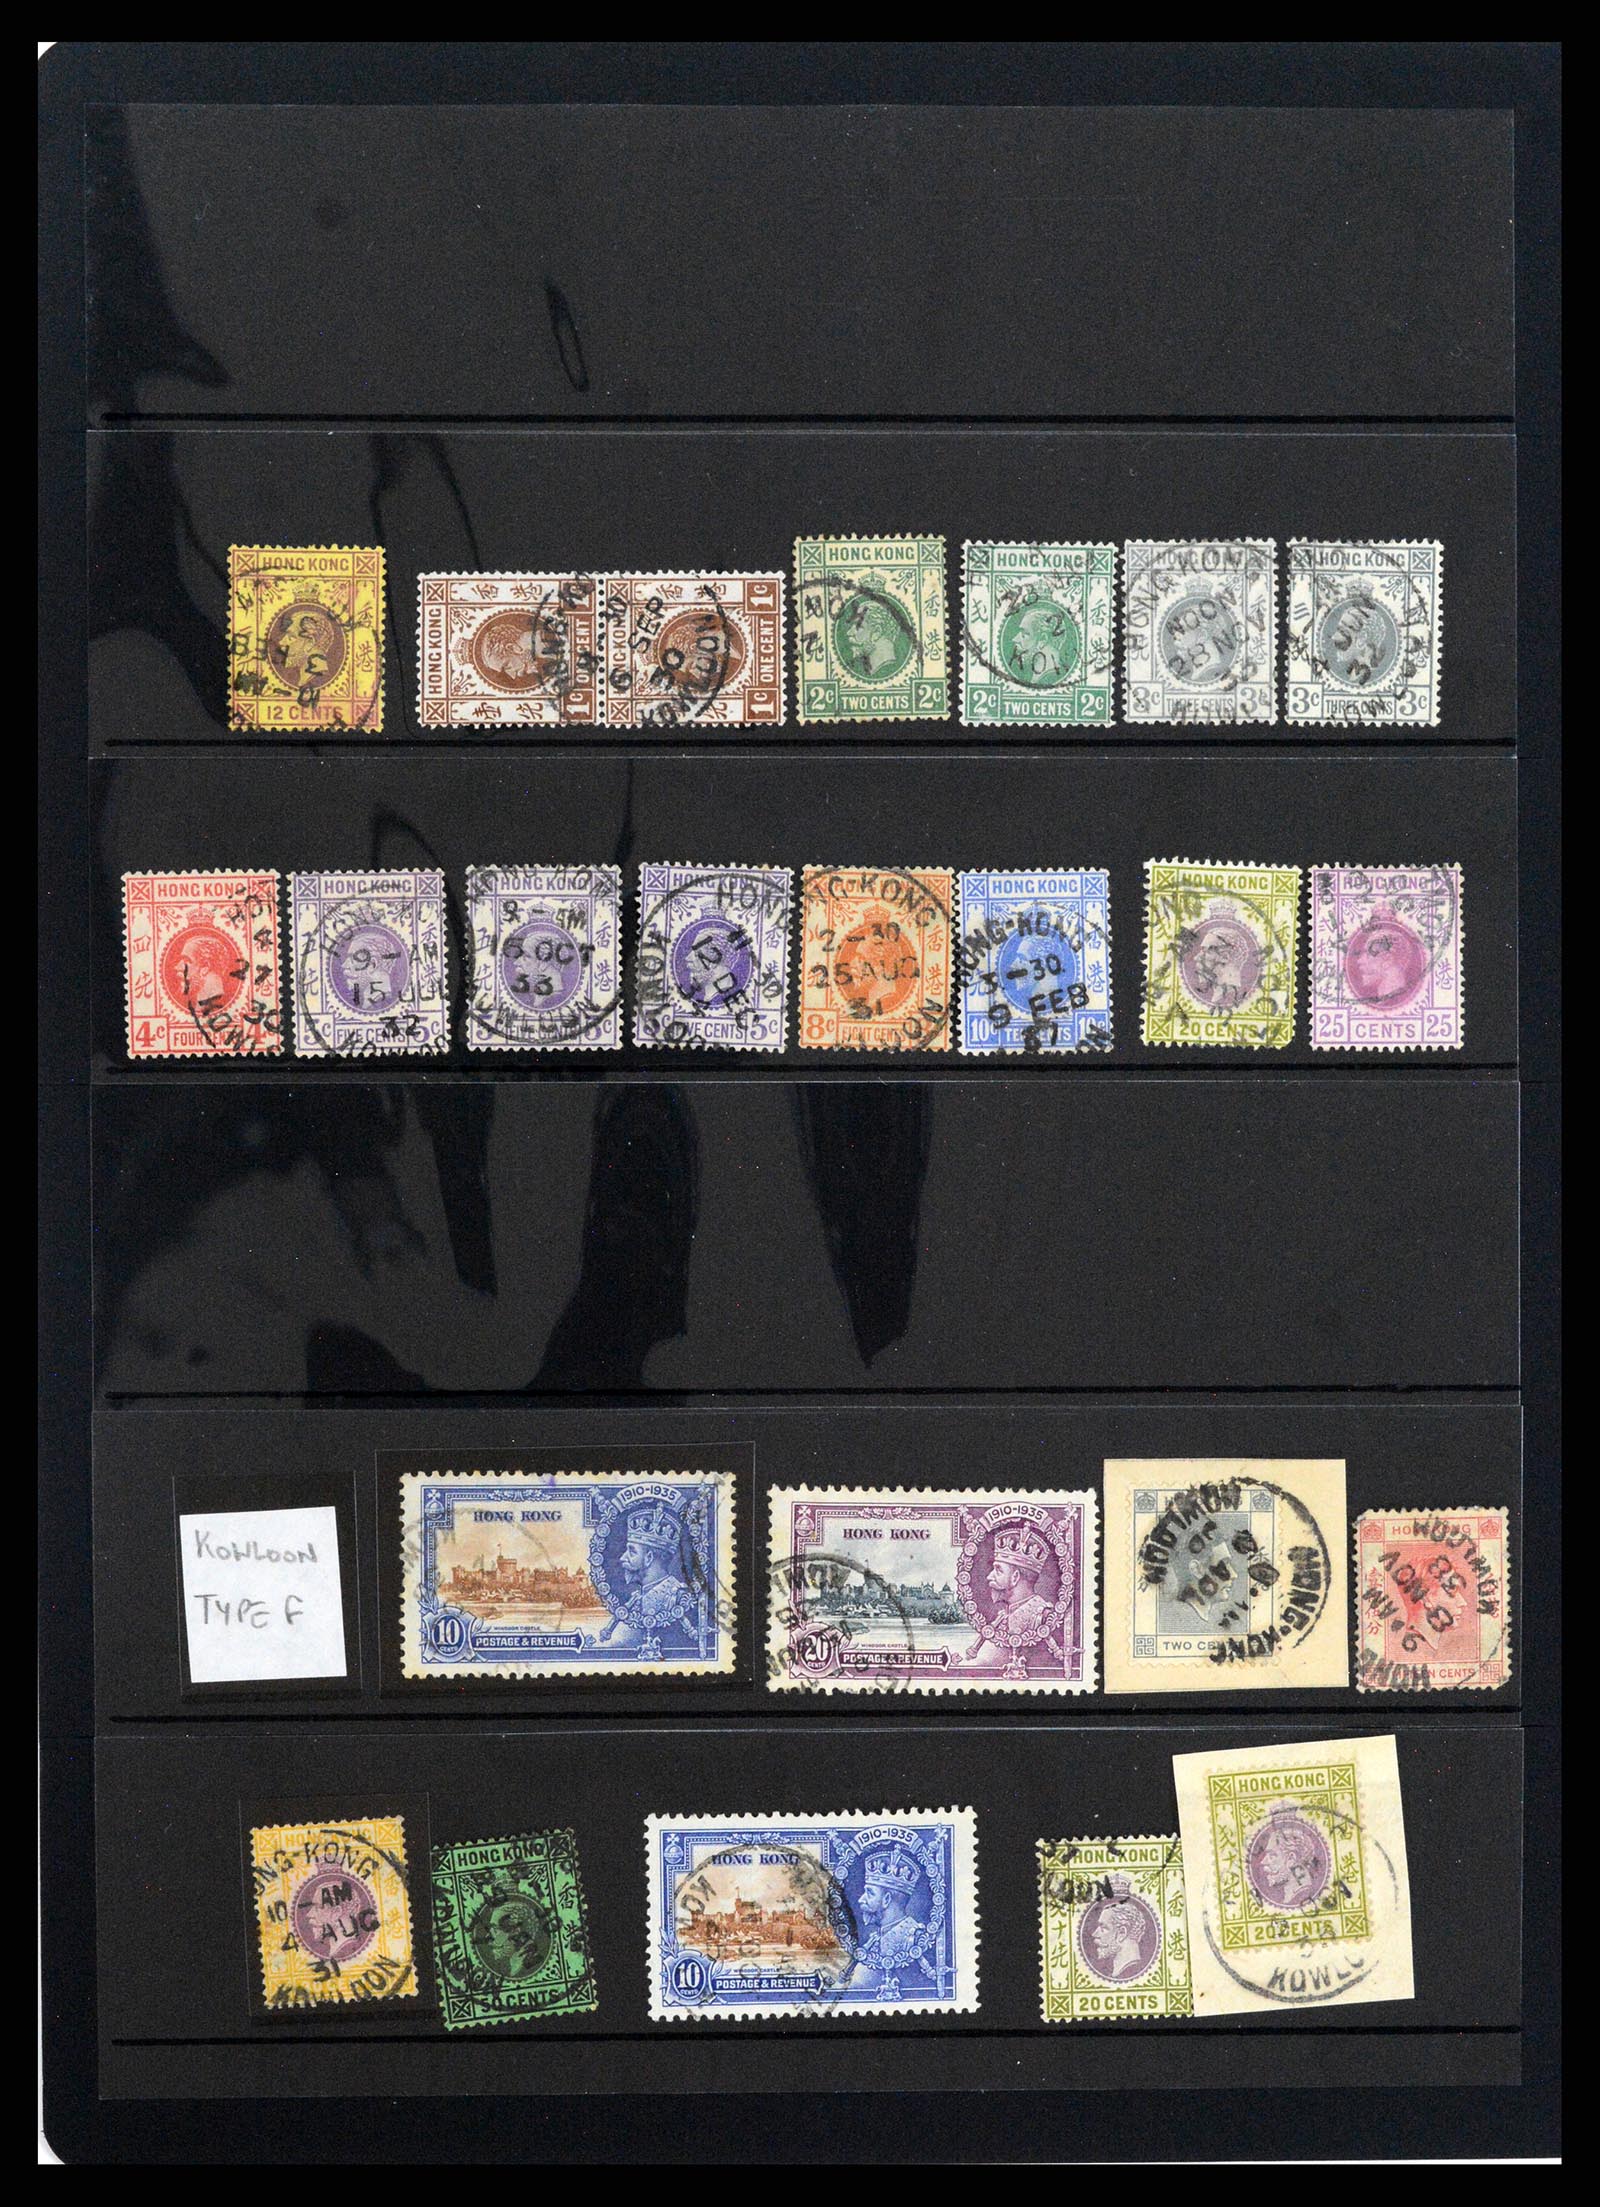 37358 065 - Stamp collection 37358 Hong Kong 1861-1997.